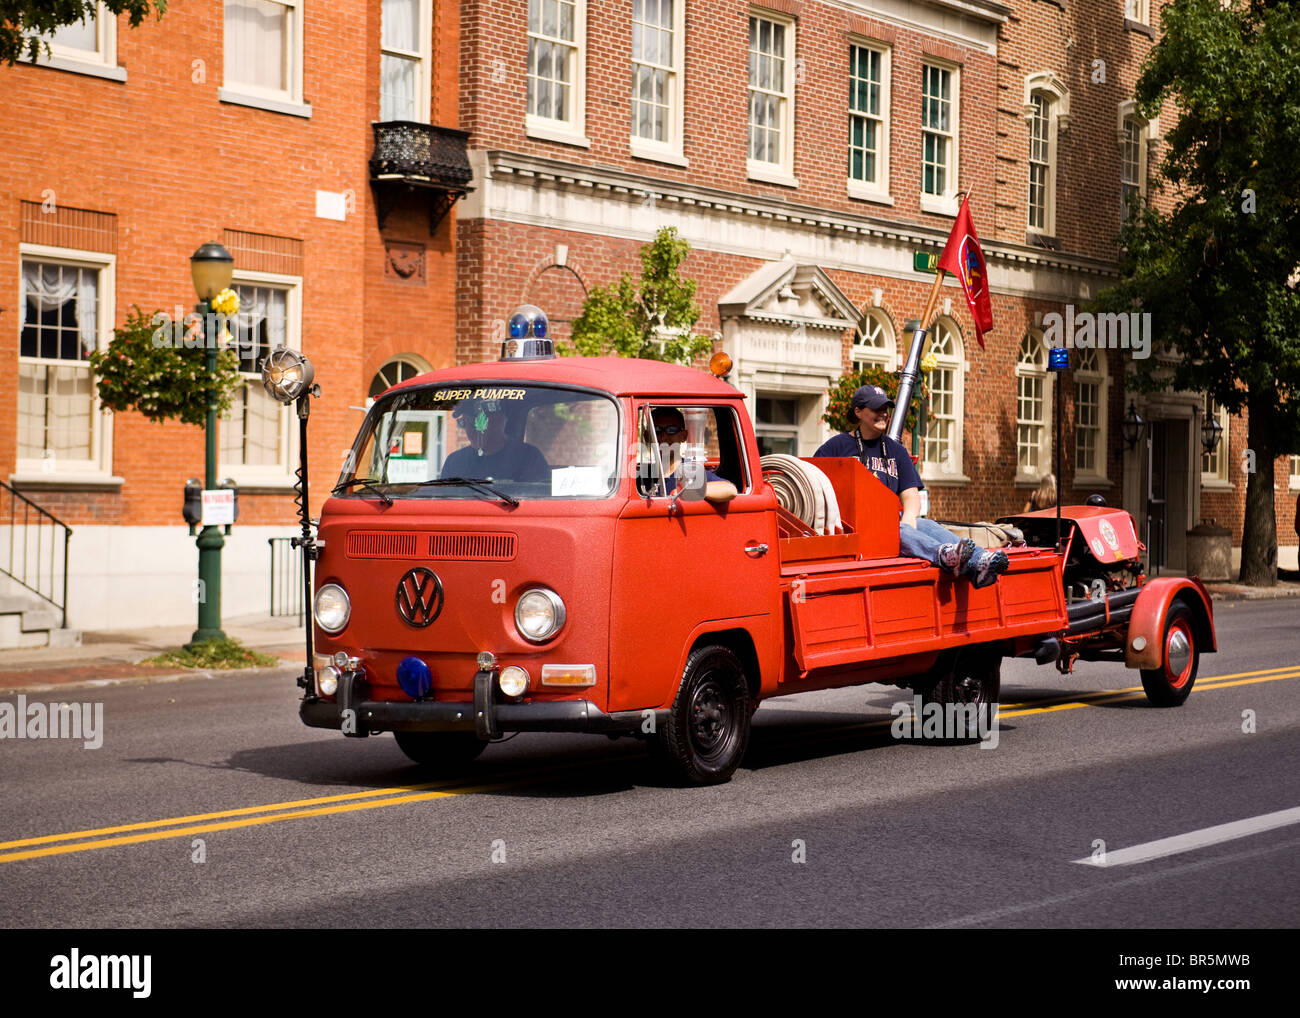 Vintage Volkswagen Kombi fire truck Stock Photo